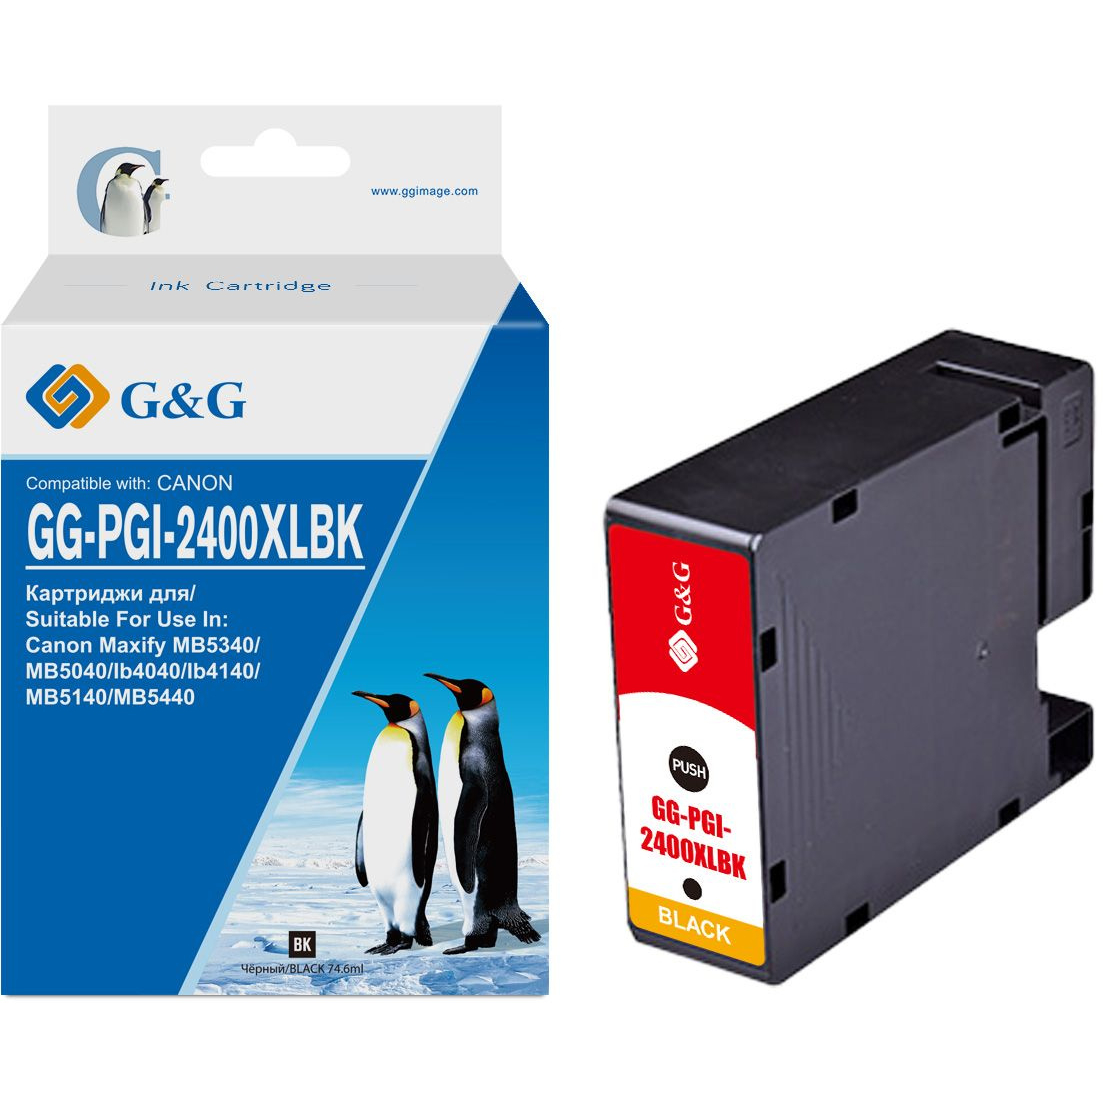 Картридж струйный G&G GG-PGI-2400XLBK PGI-2400XL BK черный (74.6мл) для Canon Maxify iB4040/iB4140/МВ5040/MB5140/МВ5340/MB5440 t2 pgi 425bk картридж ic cpgi 425bk для canon pixma ip4840 ip4940 черный с чипом